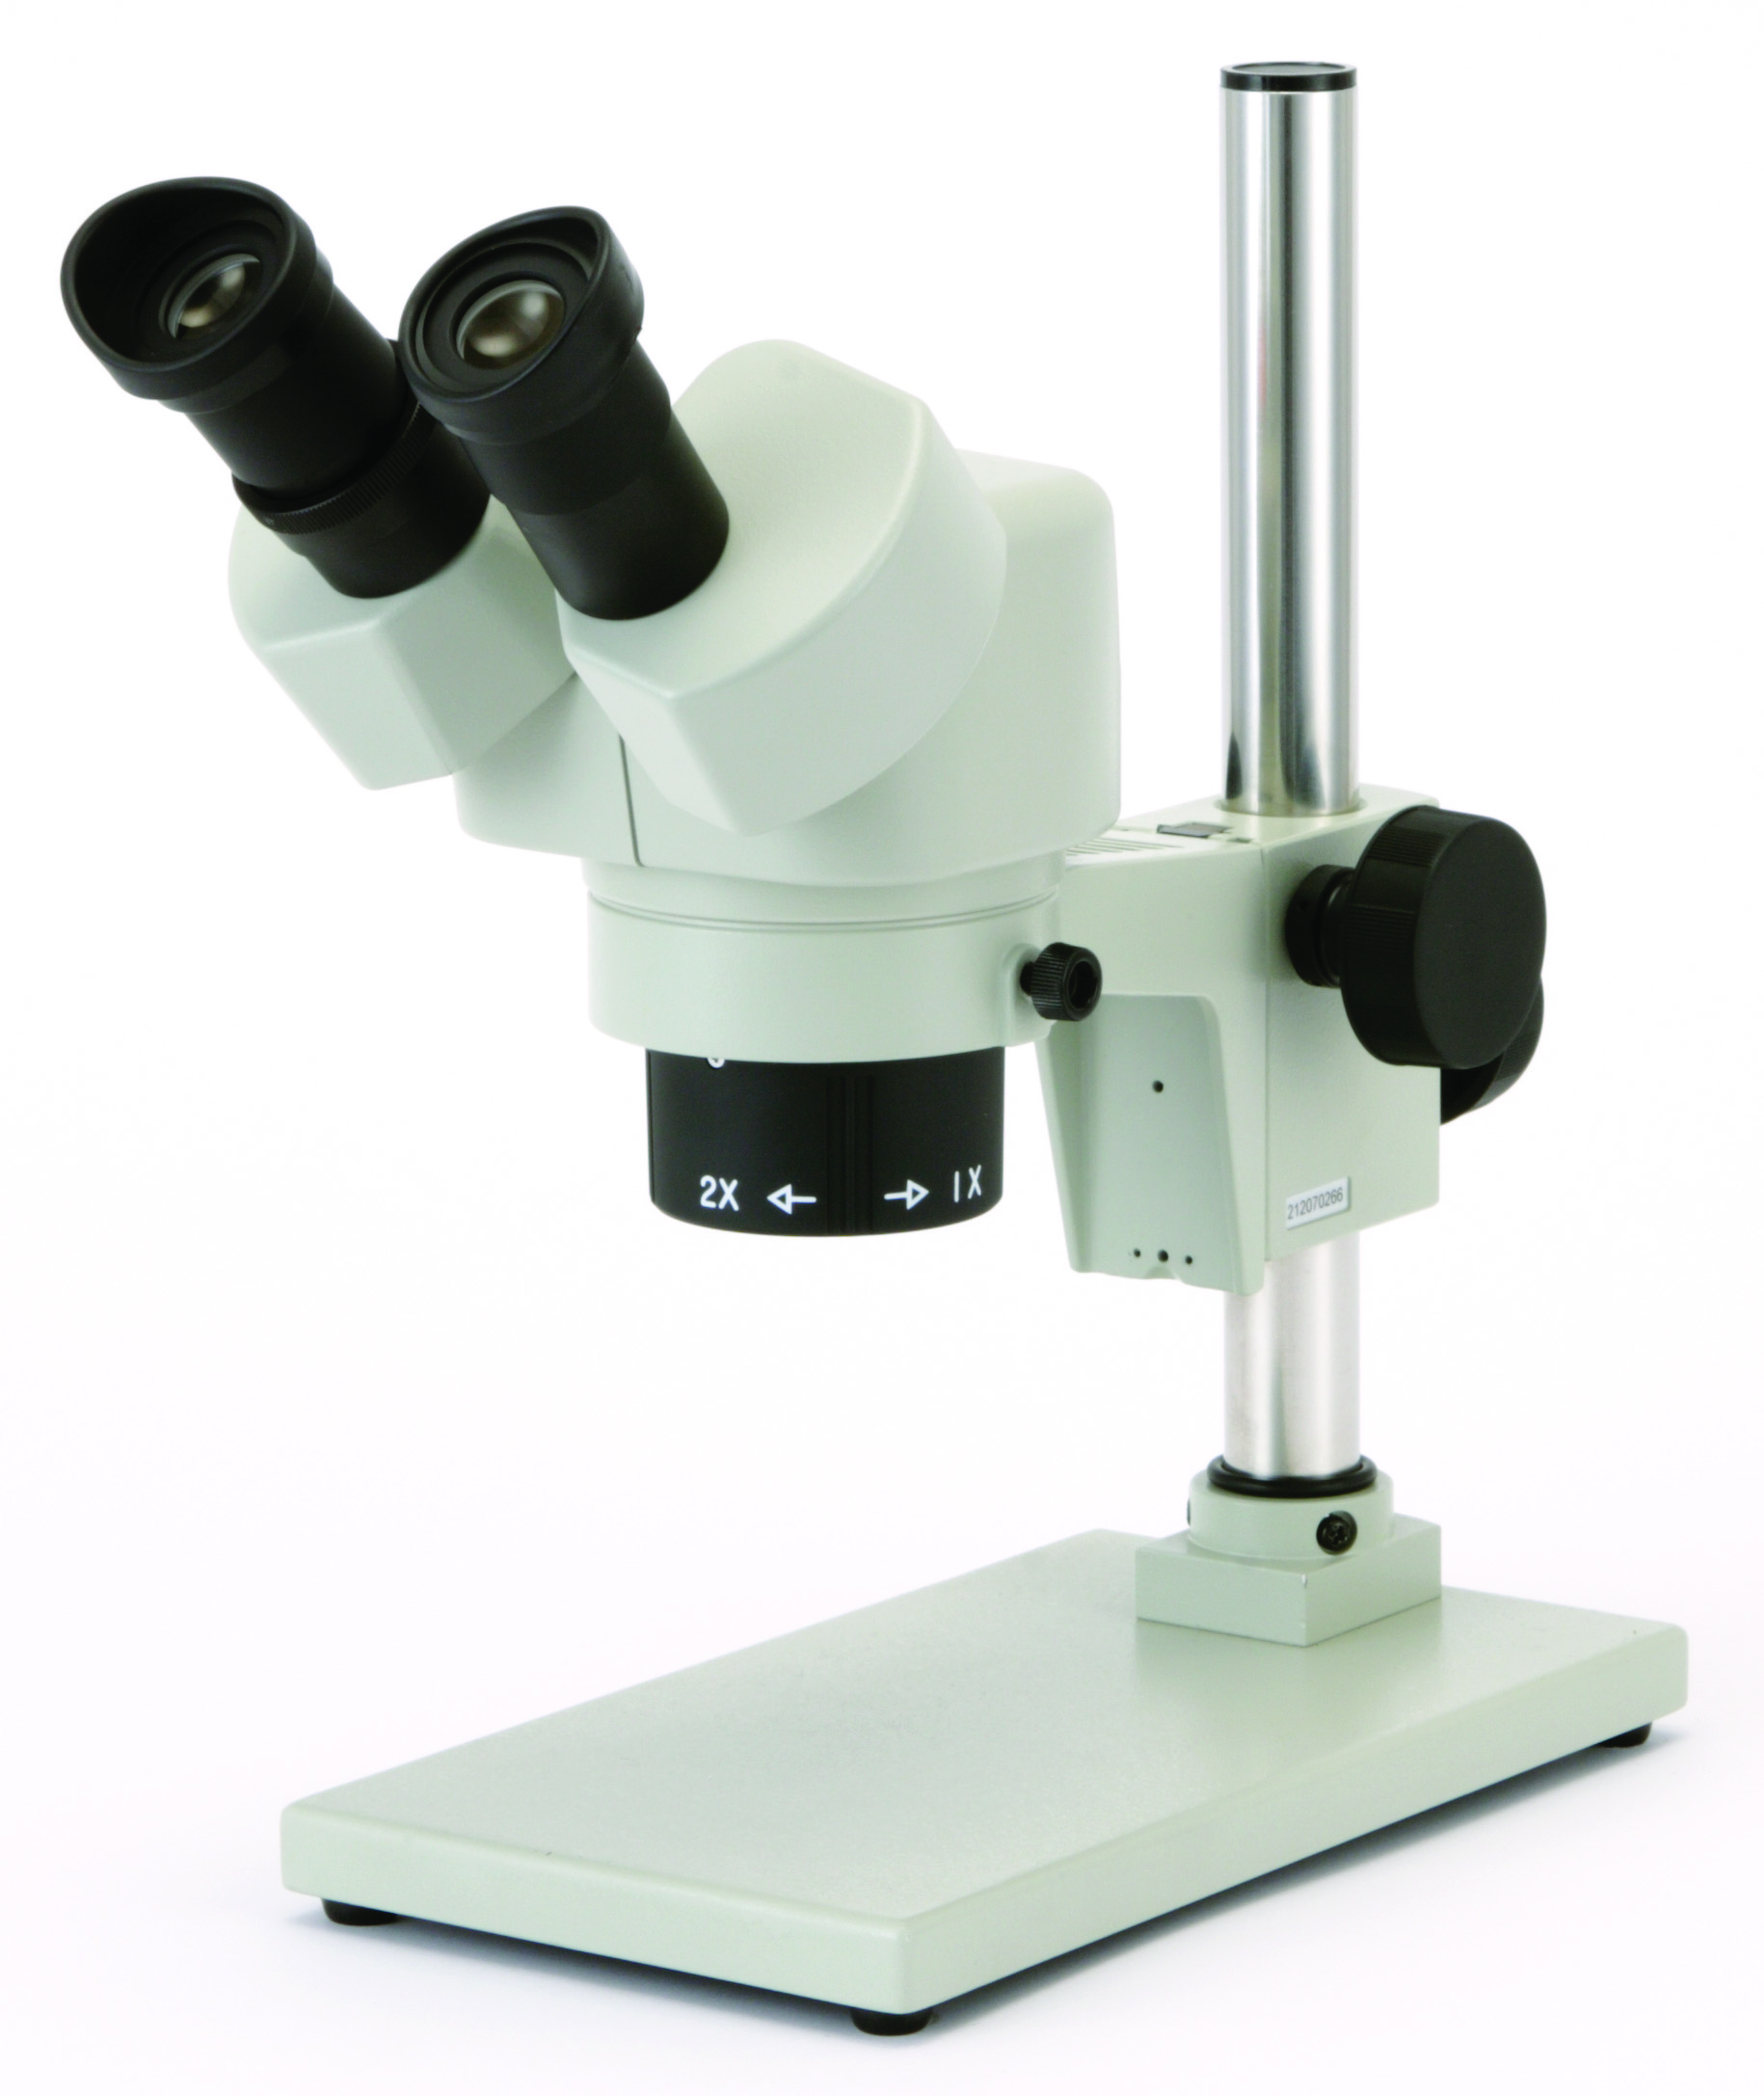 カートン光学 固定システム実体顕微鏡<双眼式>倍率10倍